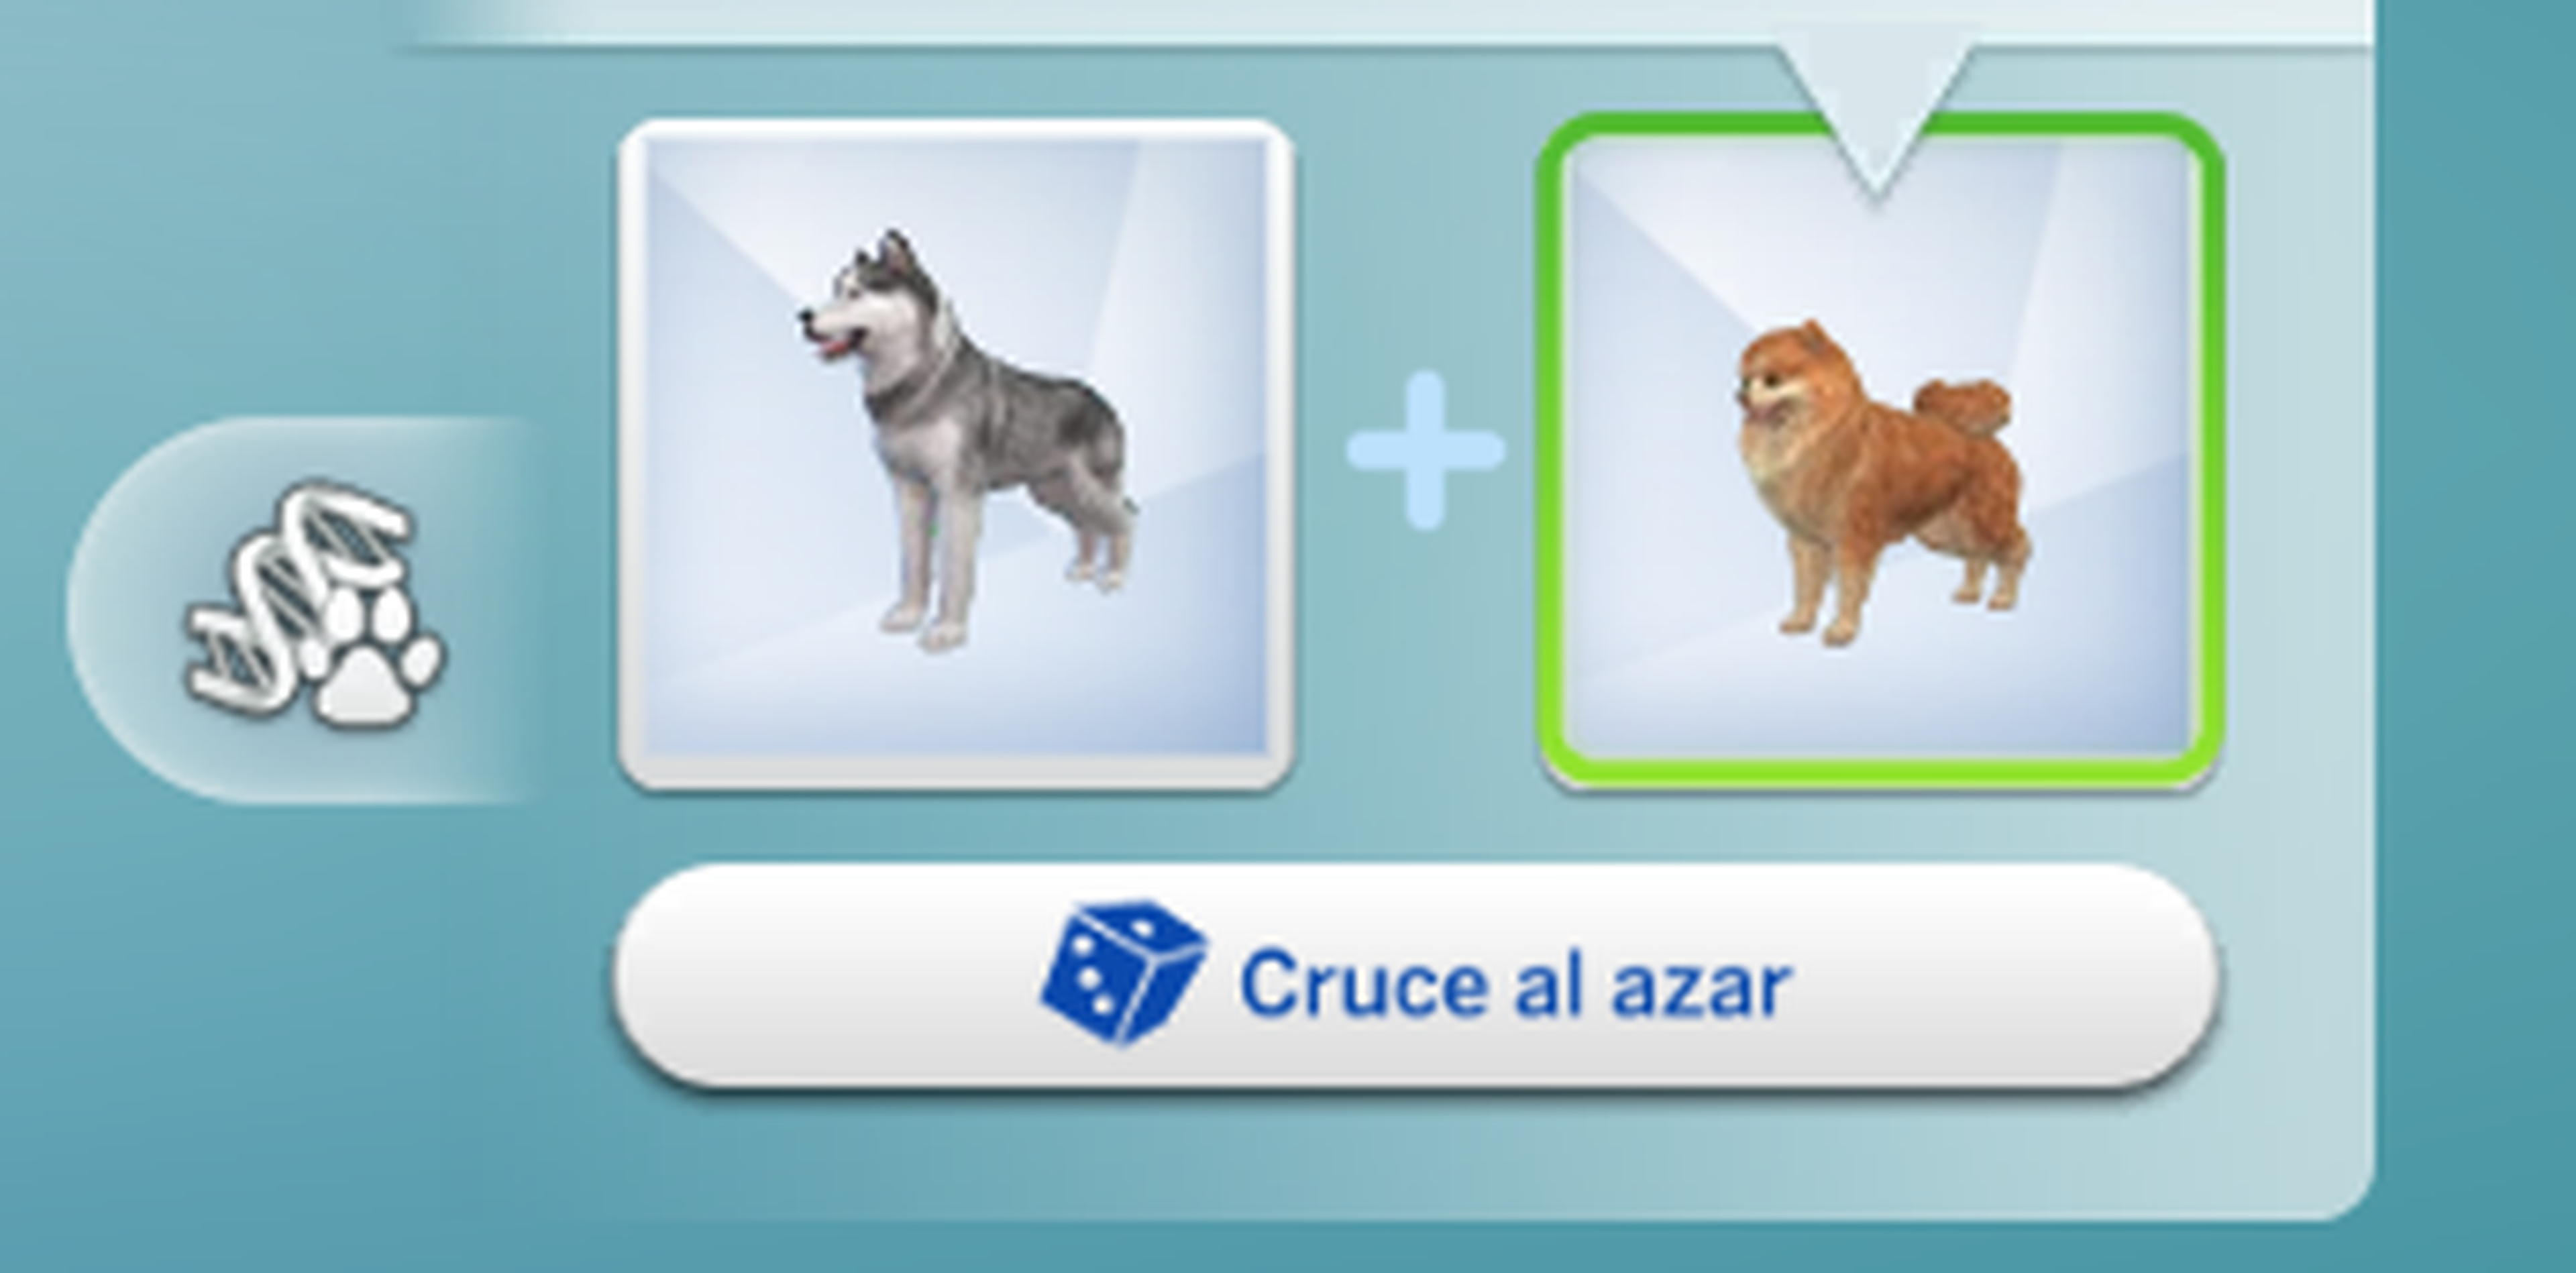 Creador Cruces Sims 4: Perros y Gatos